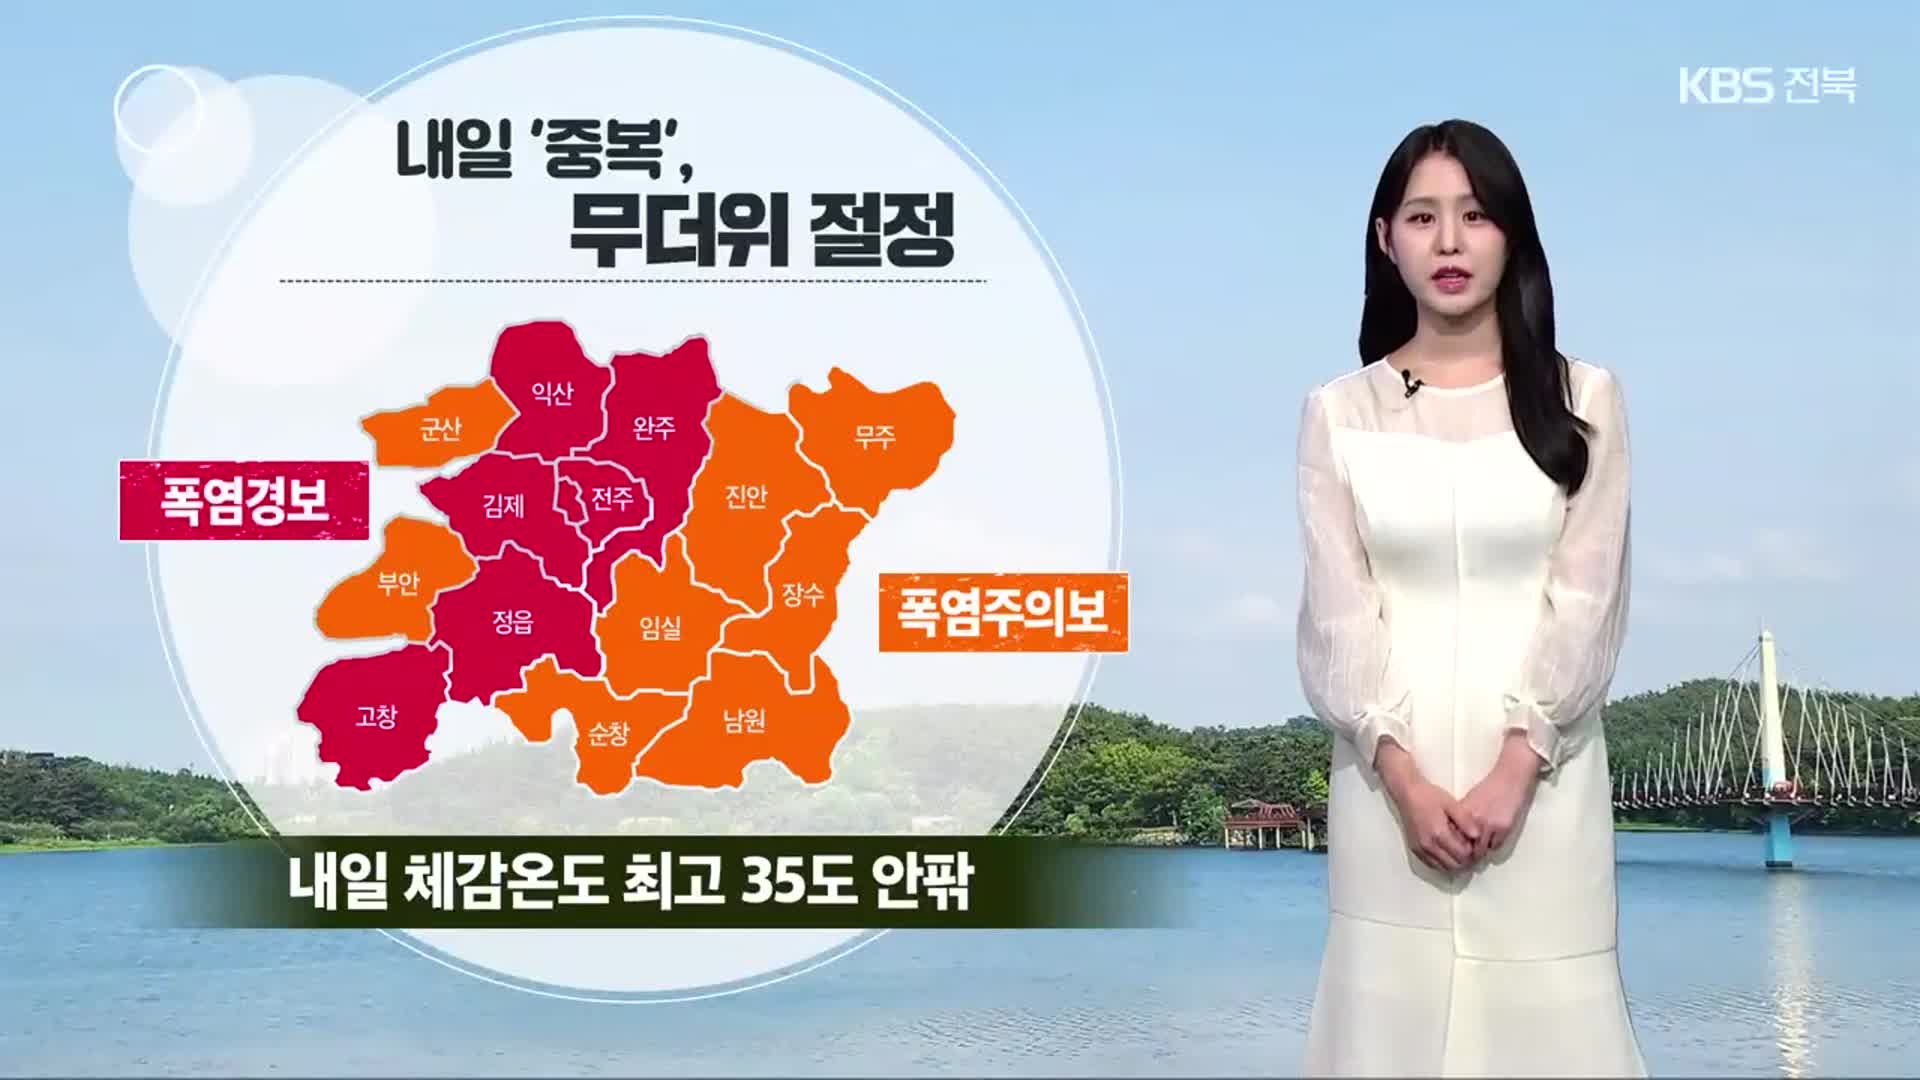 [날씨] 내일 ‘중복’, 전북 폭염경보 속 35도 더위…오후 강한 소나기